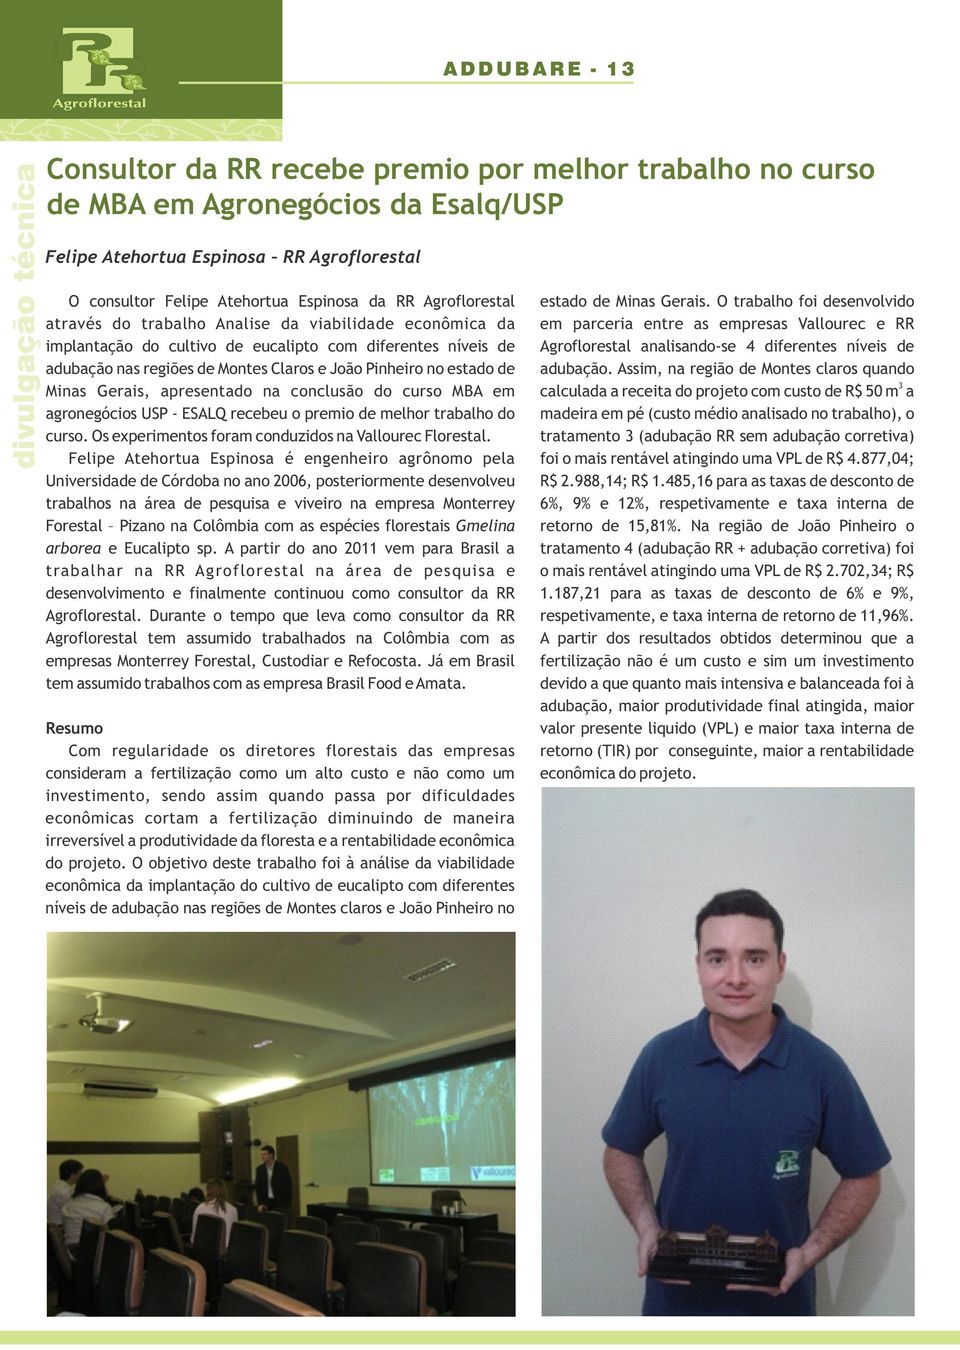 estado de Minas Gerais, apresentado na conclusão do curso MBA em agronegócios USP - ESALQ recebeu o premio de melhor trabalho do curso. Os experimentos foram conduzidos na Vallourec Florestal.